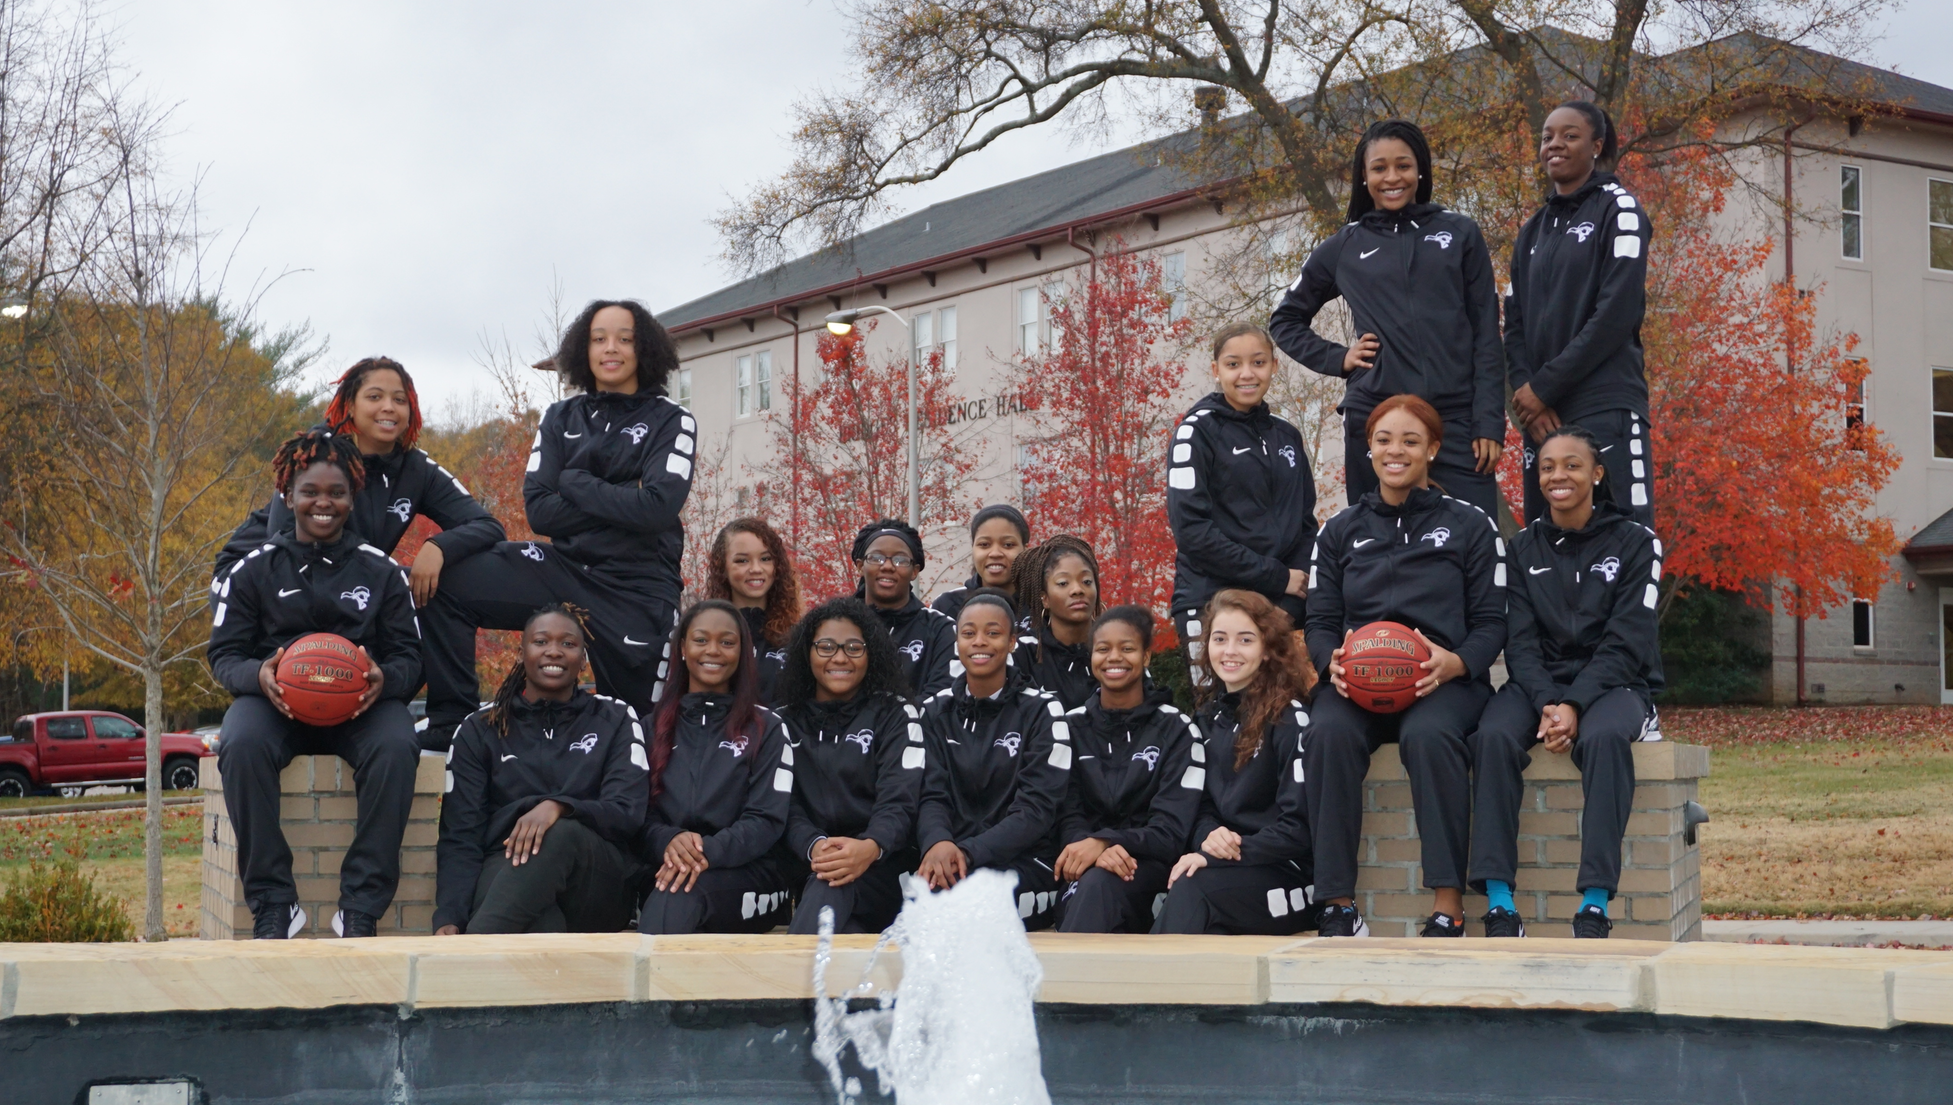 Meet your SMC Women's Basketball Team